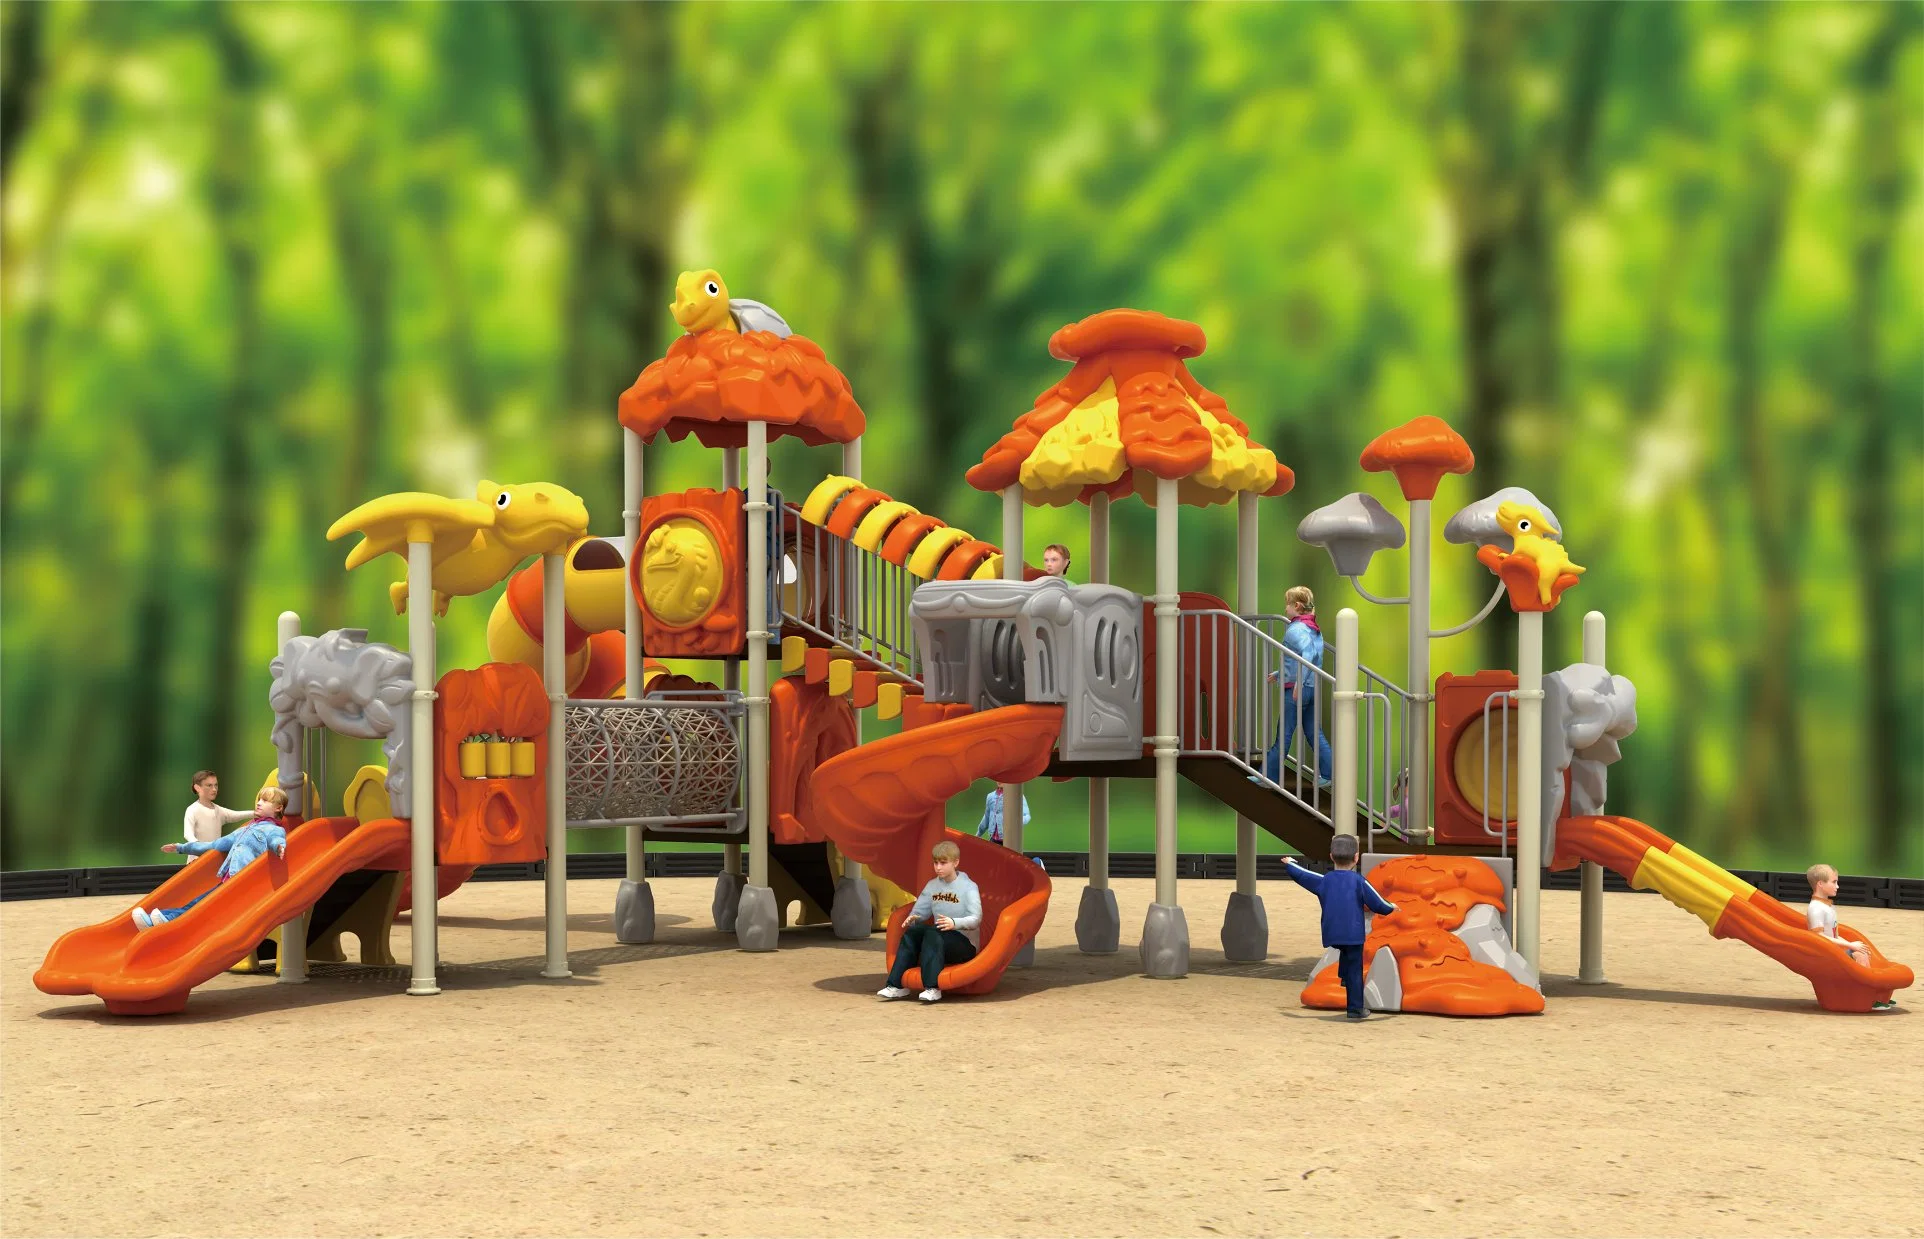 Parque de atracciones estándar europeo juguetes niños juegos de niños al aire libre